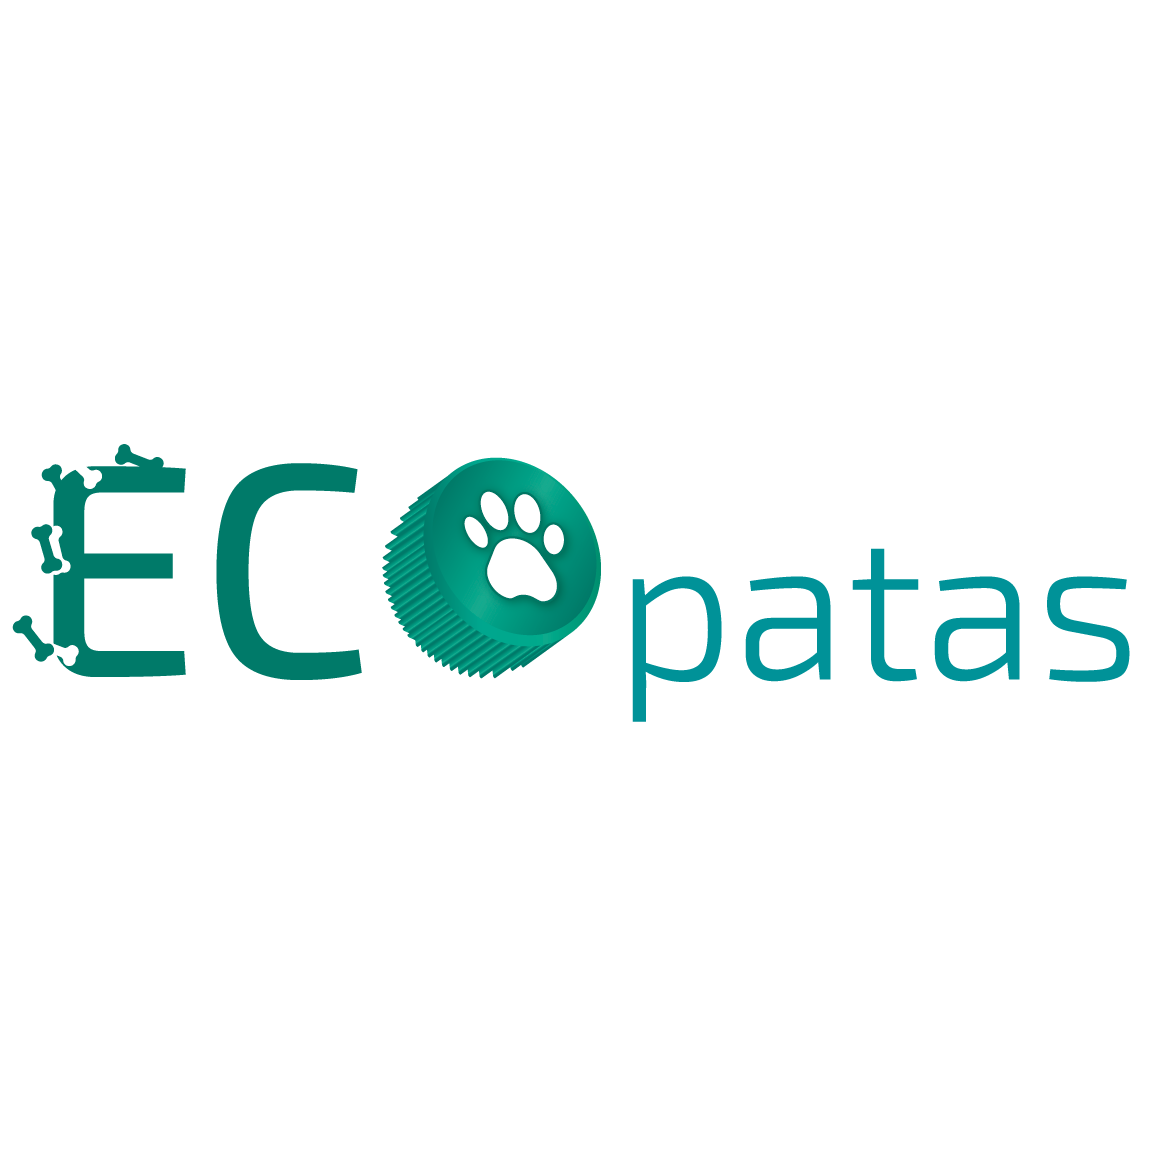 ONG Ecopatas